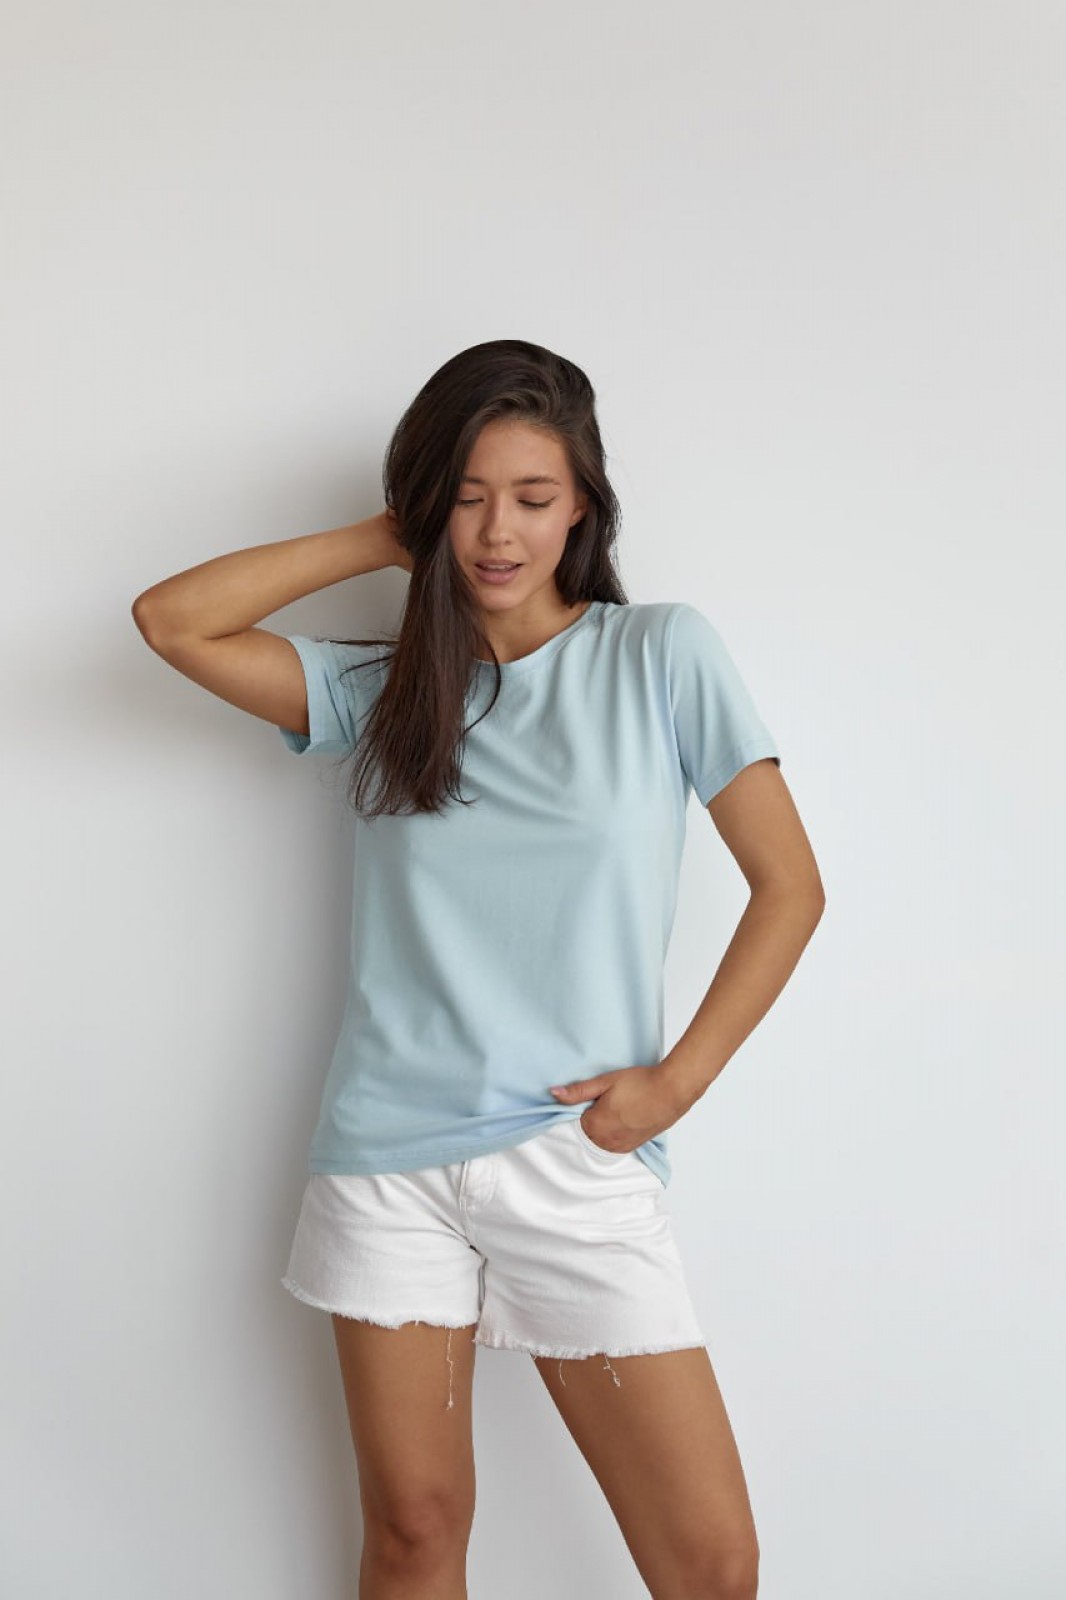 Жіноча базова футболка колір світло-блакитний р.S 449917